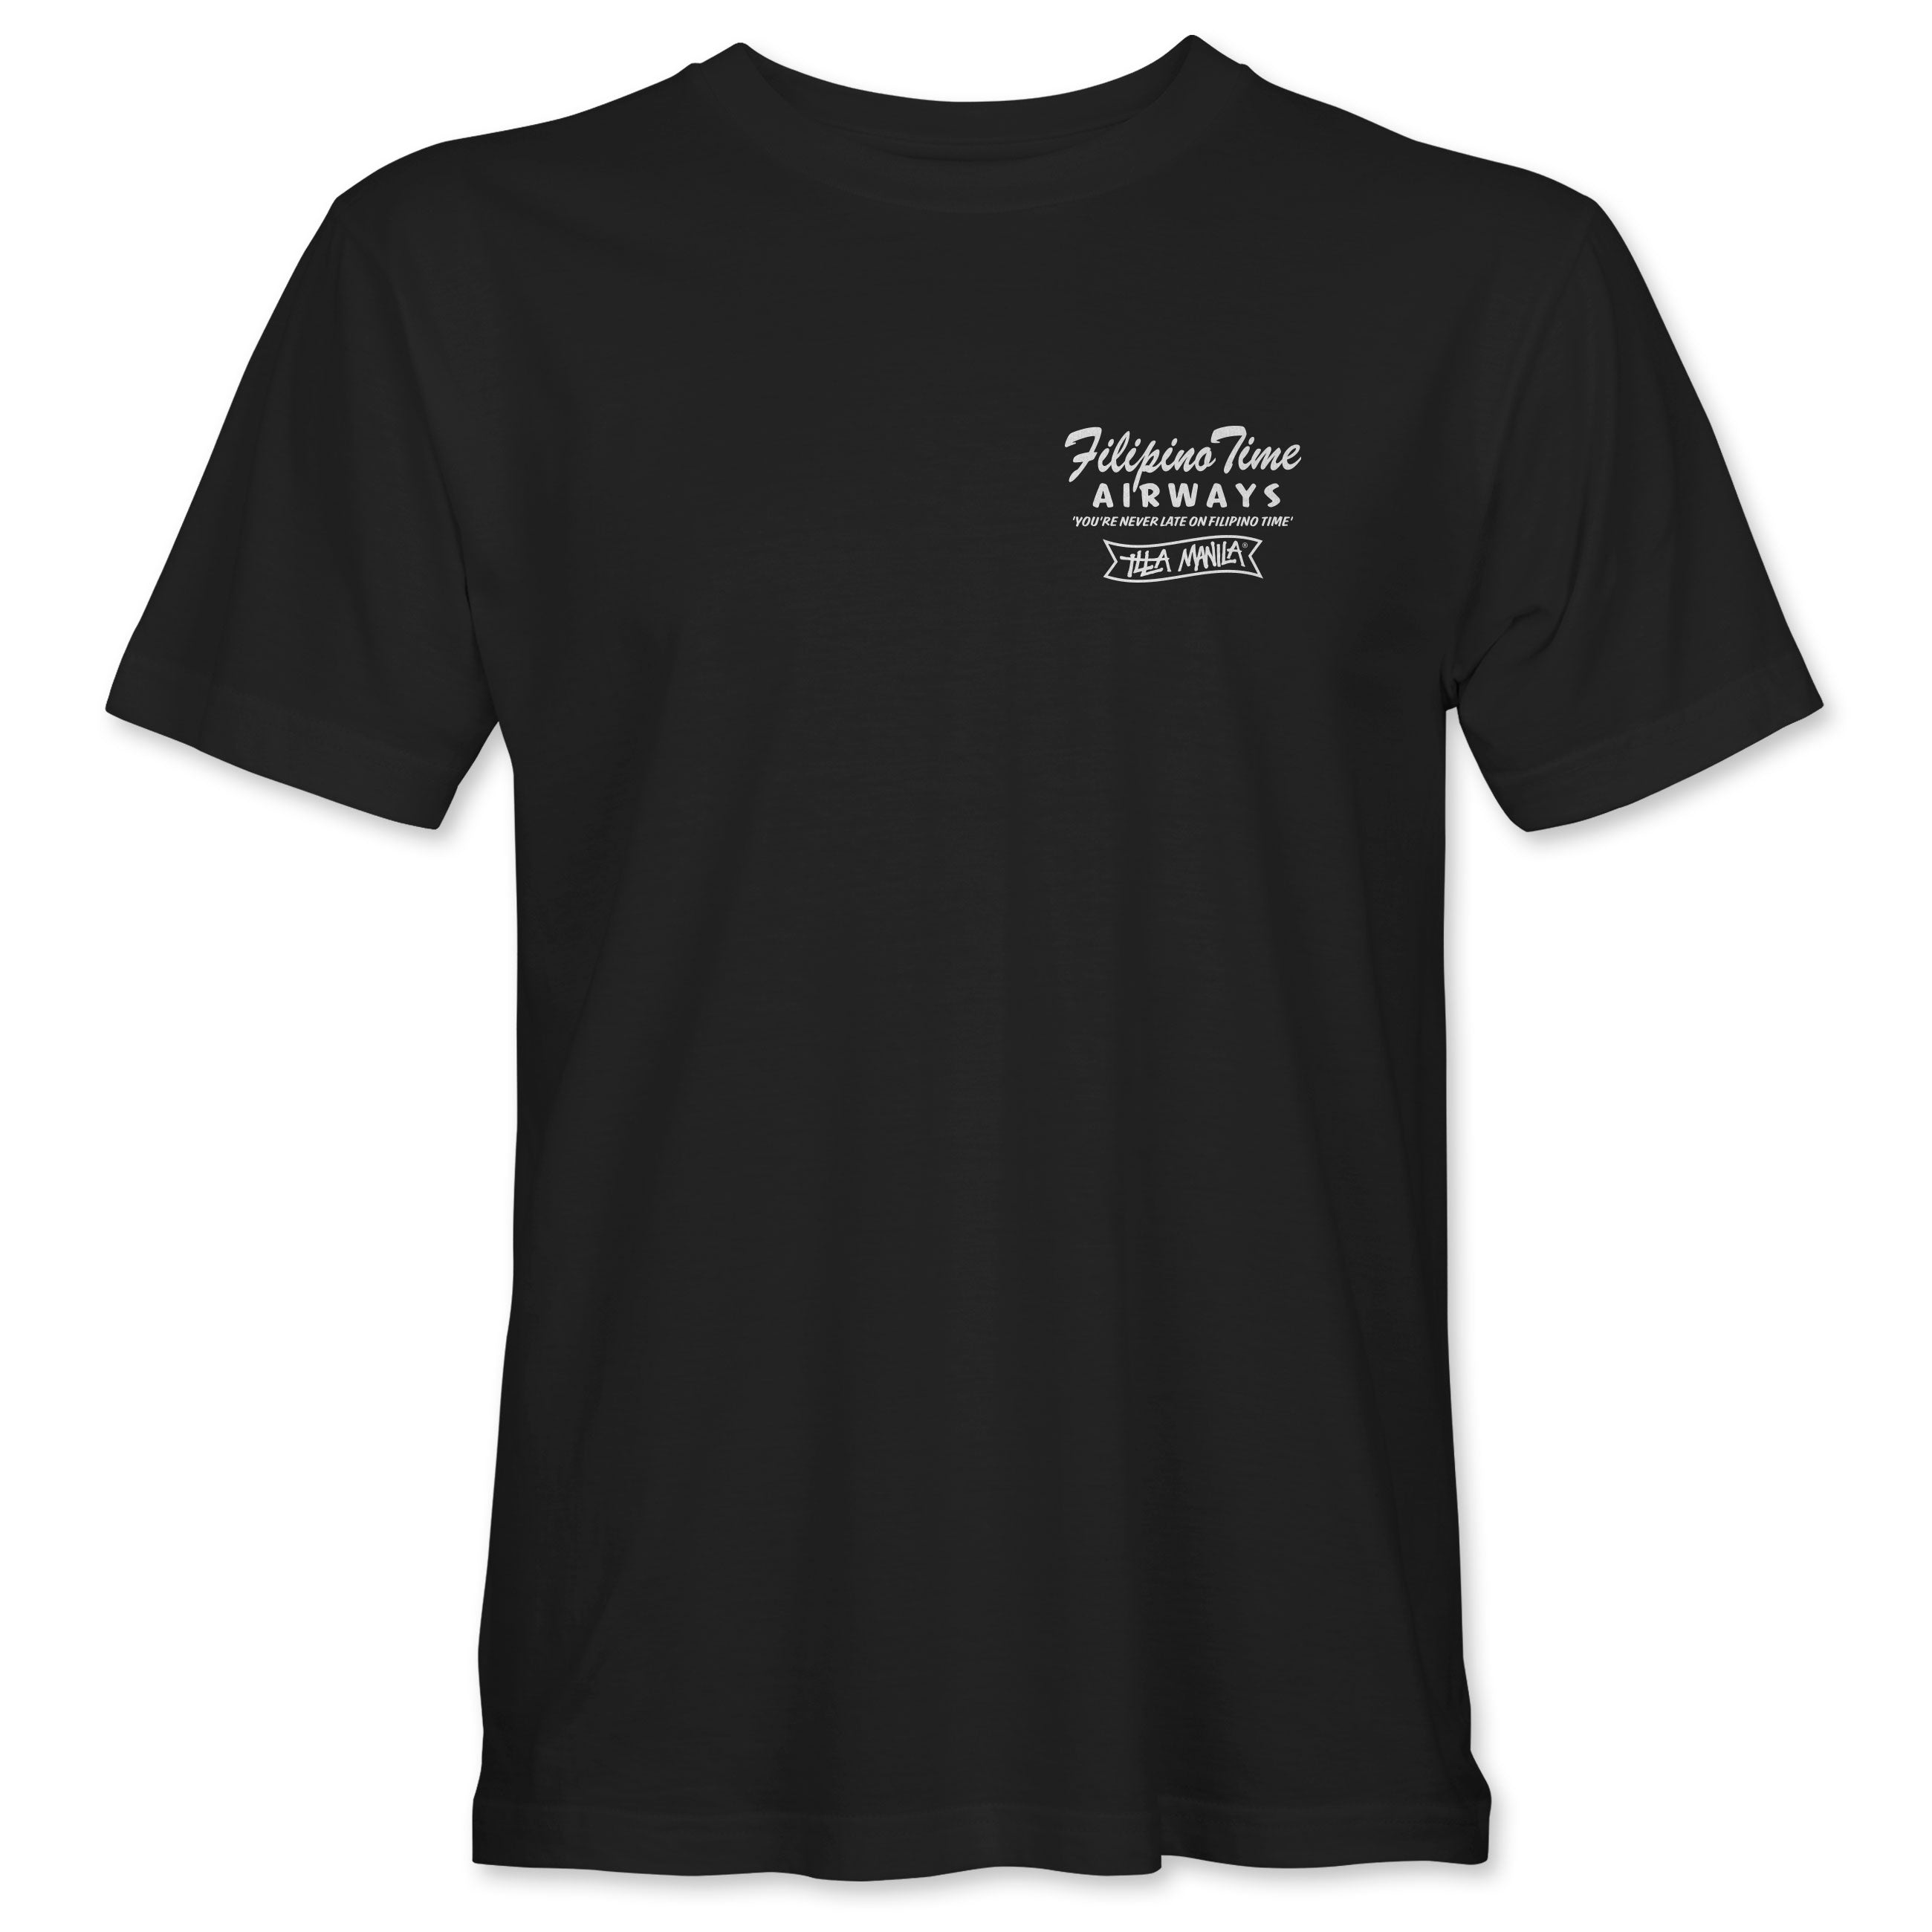 Filipino Time Airways T-shirt - Black